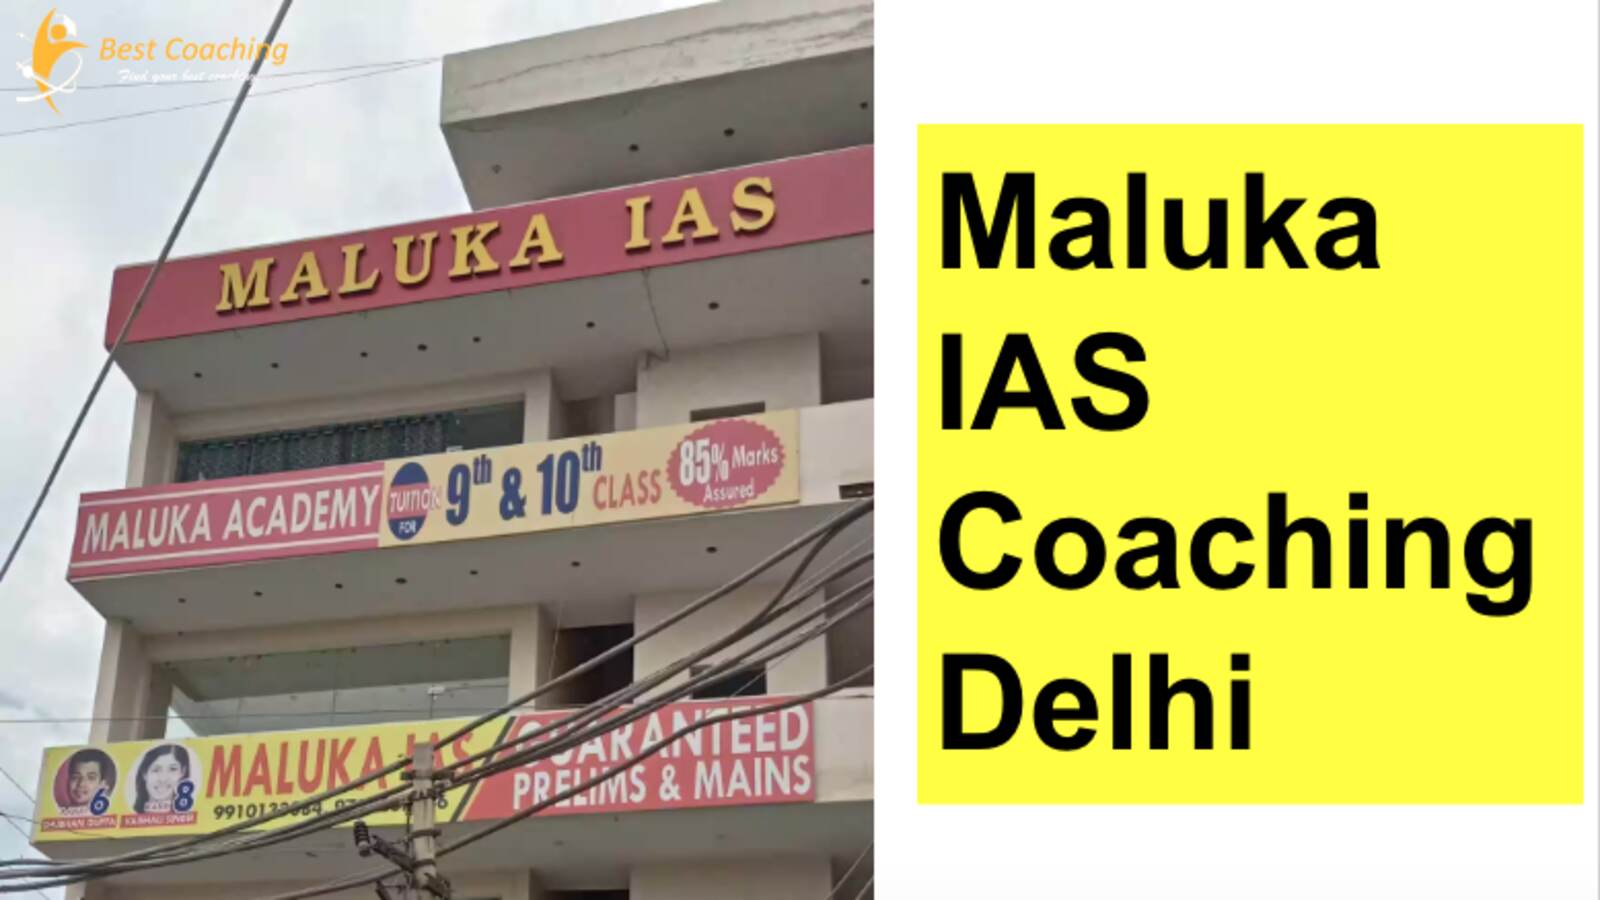 Maluka IAS Coaching Delhi